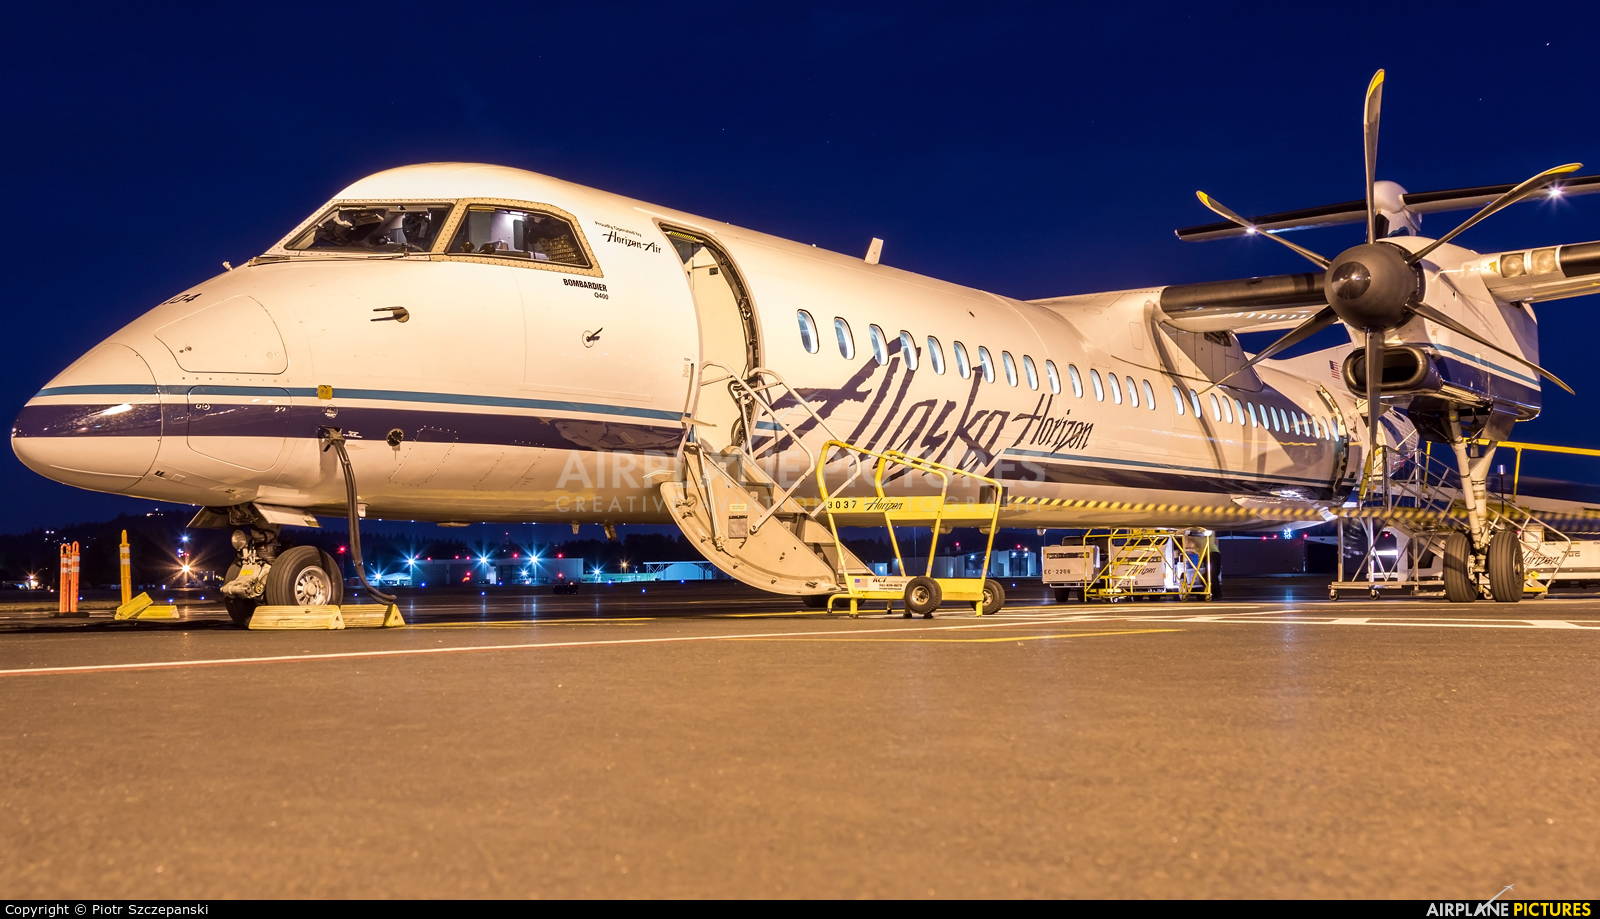 Alaska Airlines - Horizon Air N404QX aircraft at Portland